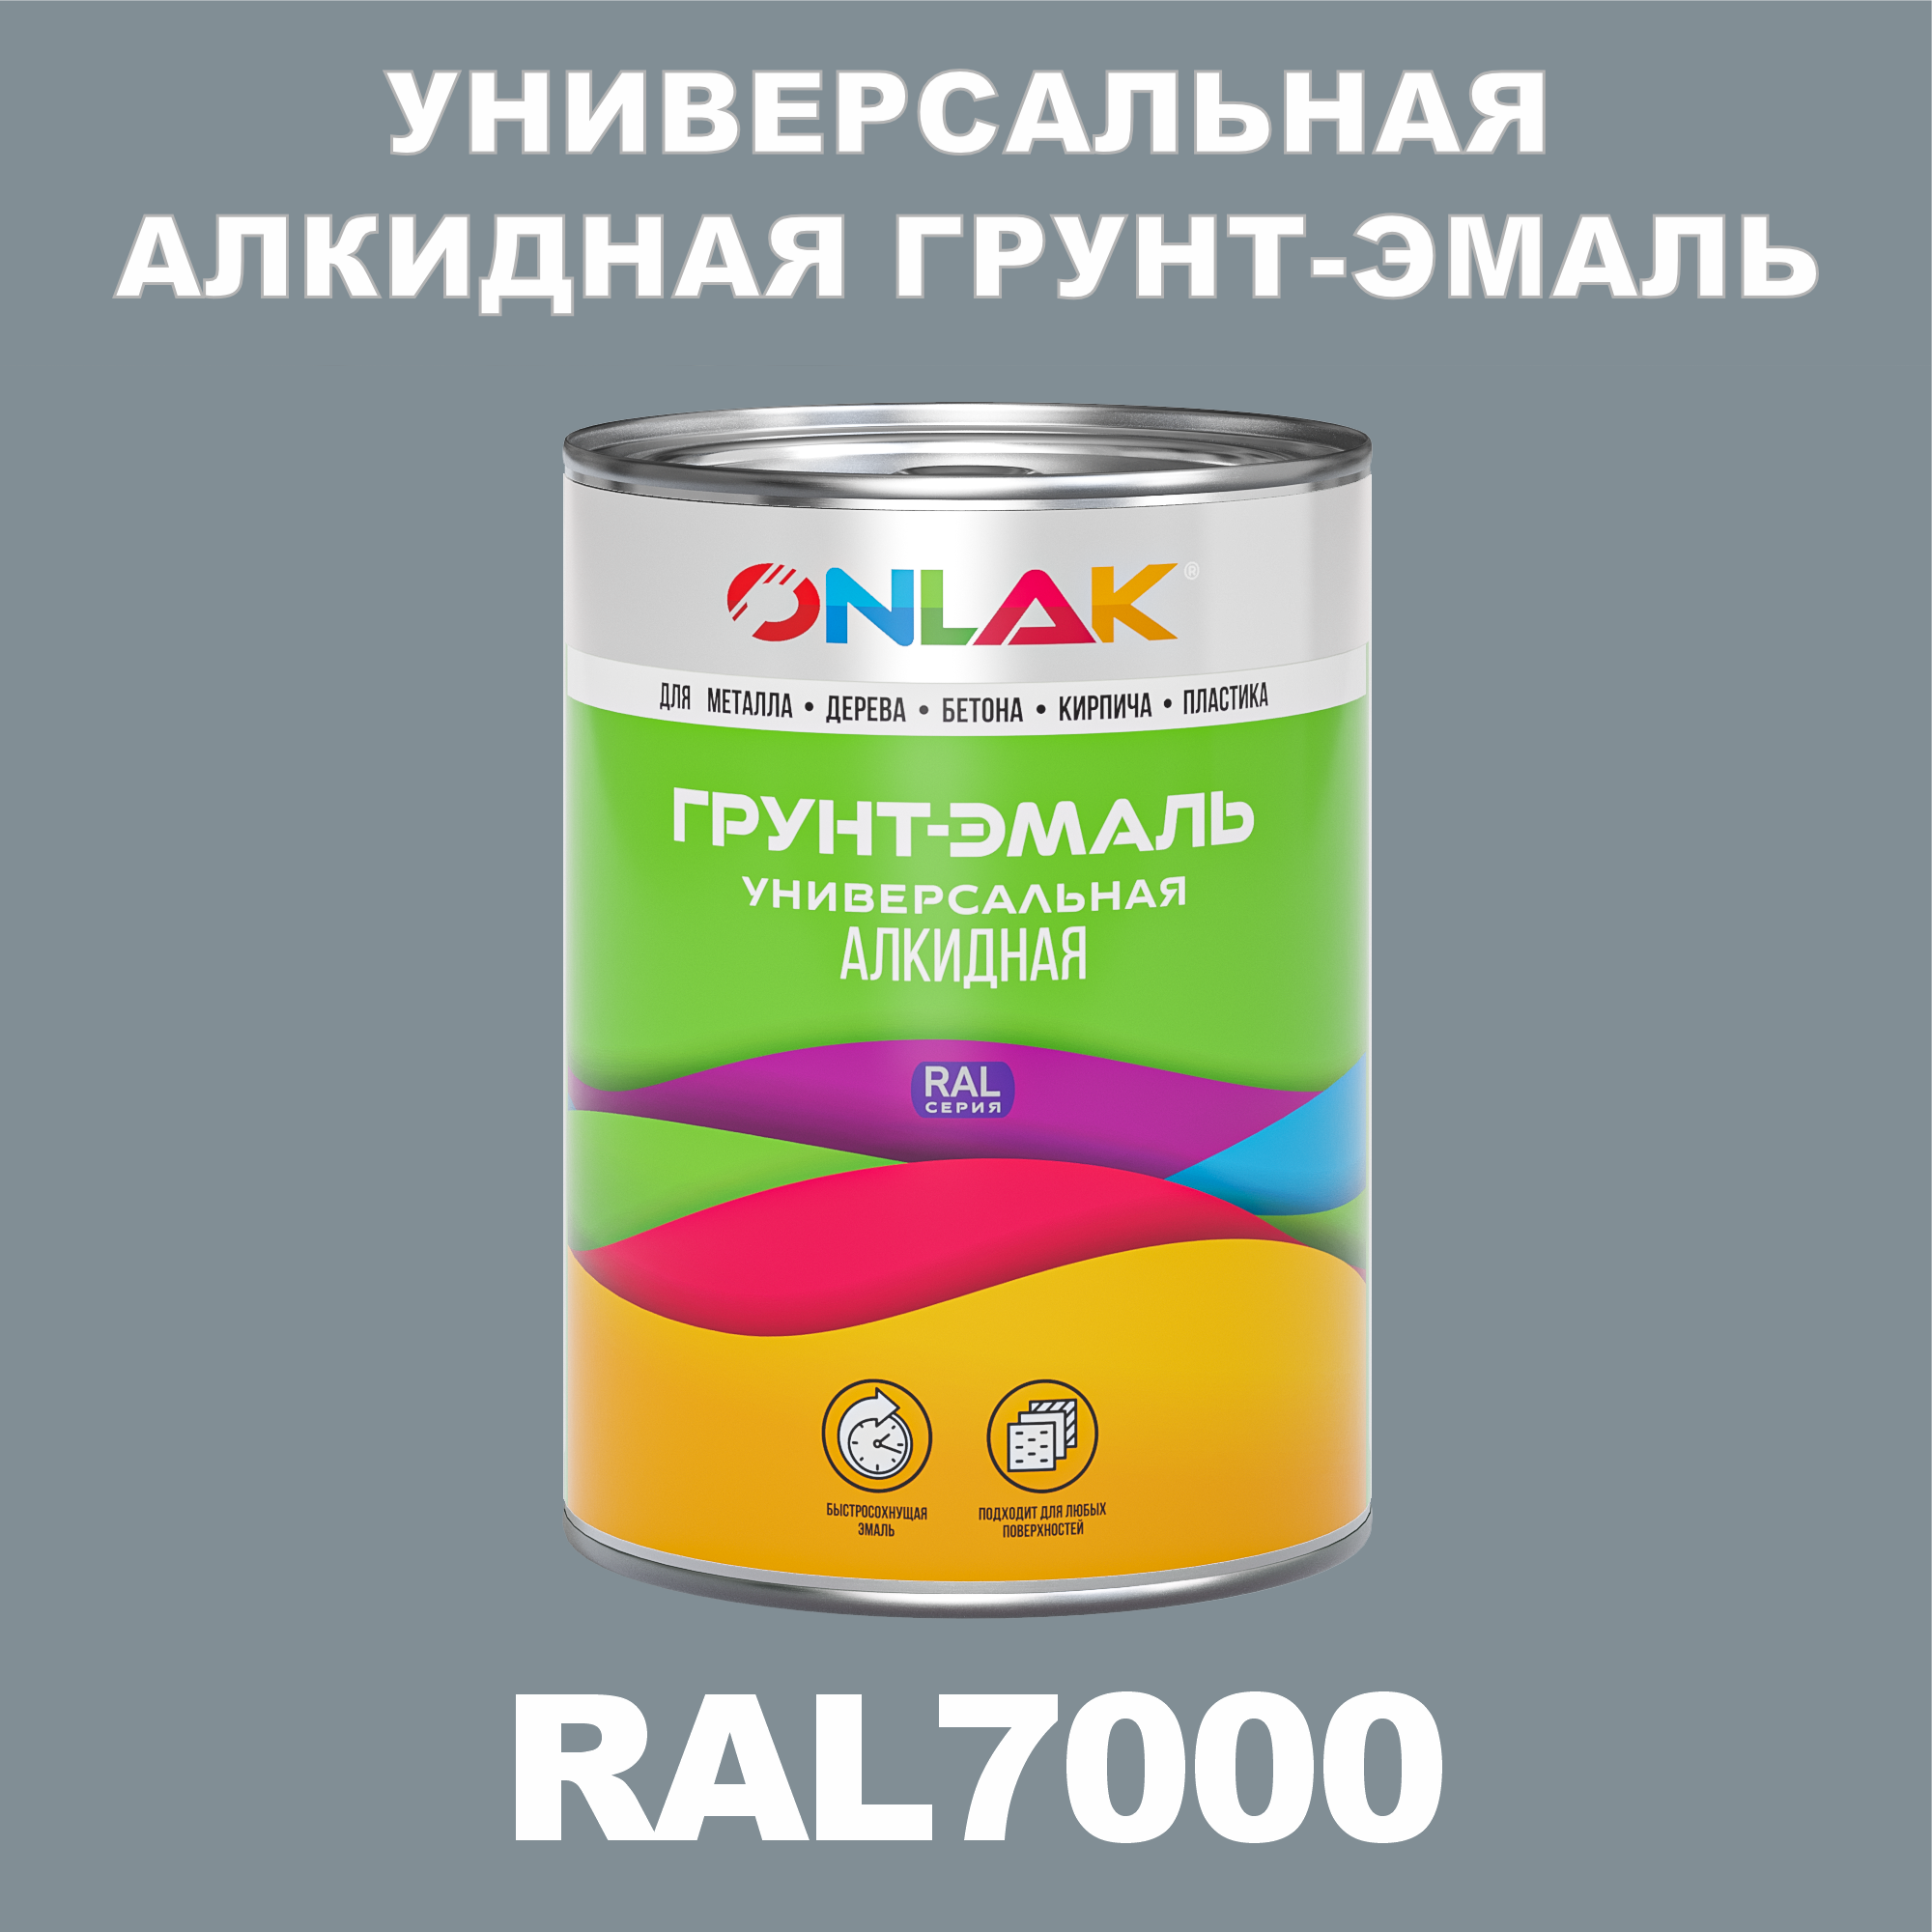 Грунт-эмаль ONLAK 1К RAL7000 антикоррозионная алкидная по металлу по ржавчине 1 кг грунт эмаль yollo по ржавчине алкидная серая 0 9 кг